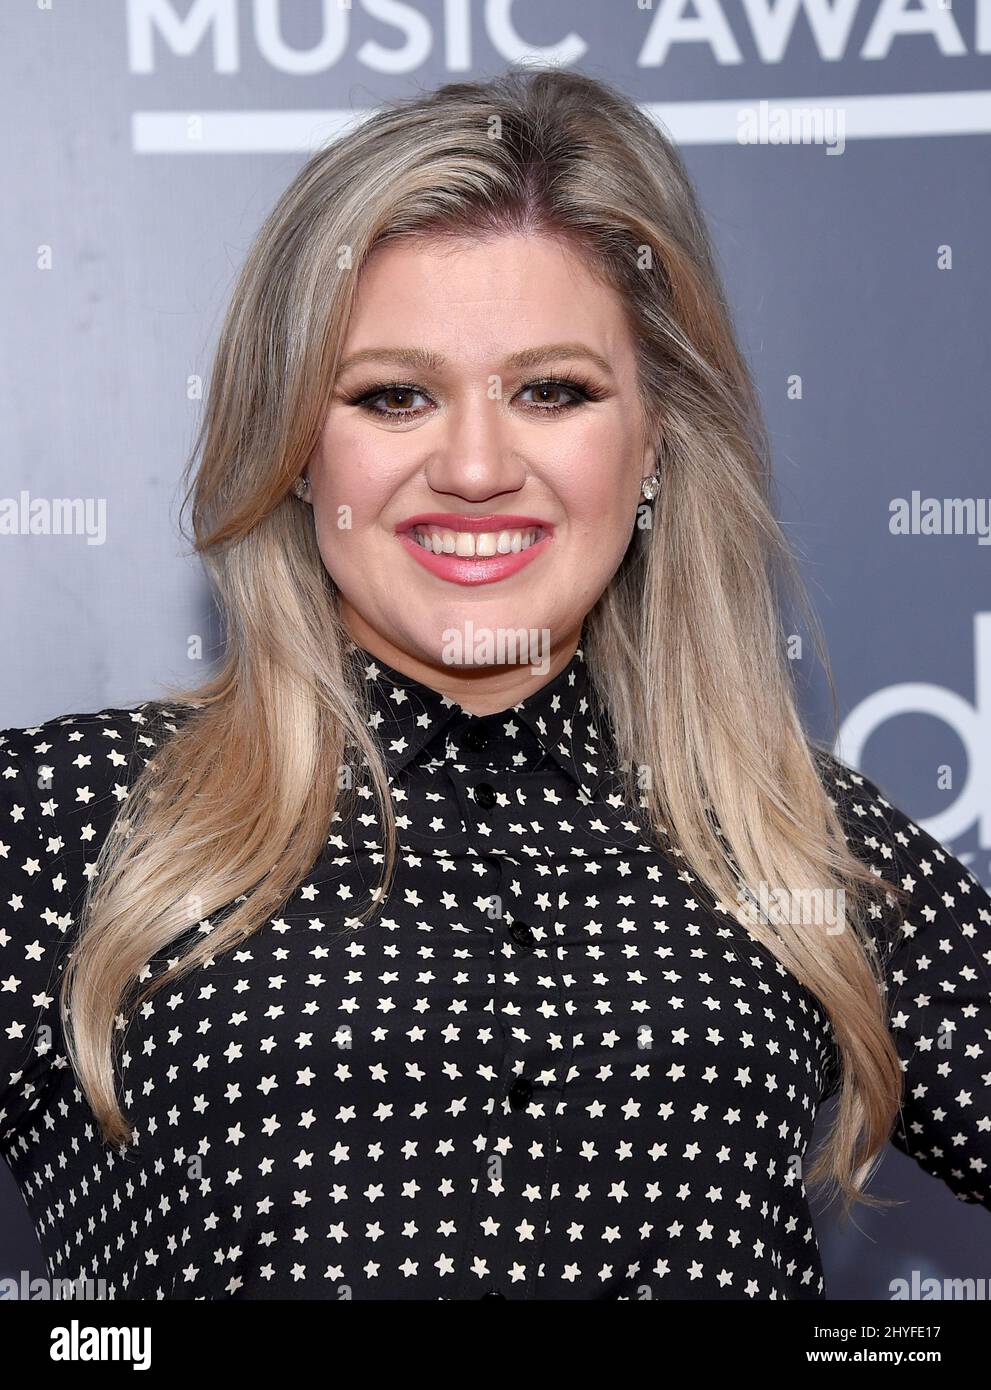 Kelly Clarkson ospiterà il promo '2018 Billboard Music Awards' tenuto presso gli Universal Studios, California, il 17 maggio 2018. Foto Stock